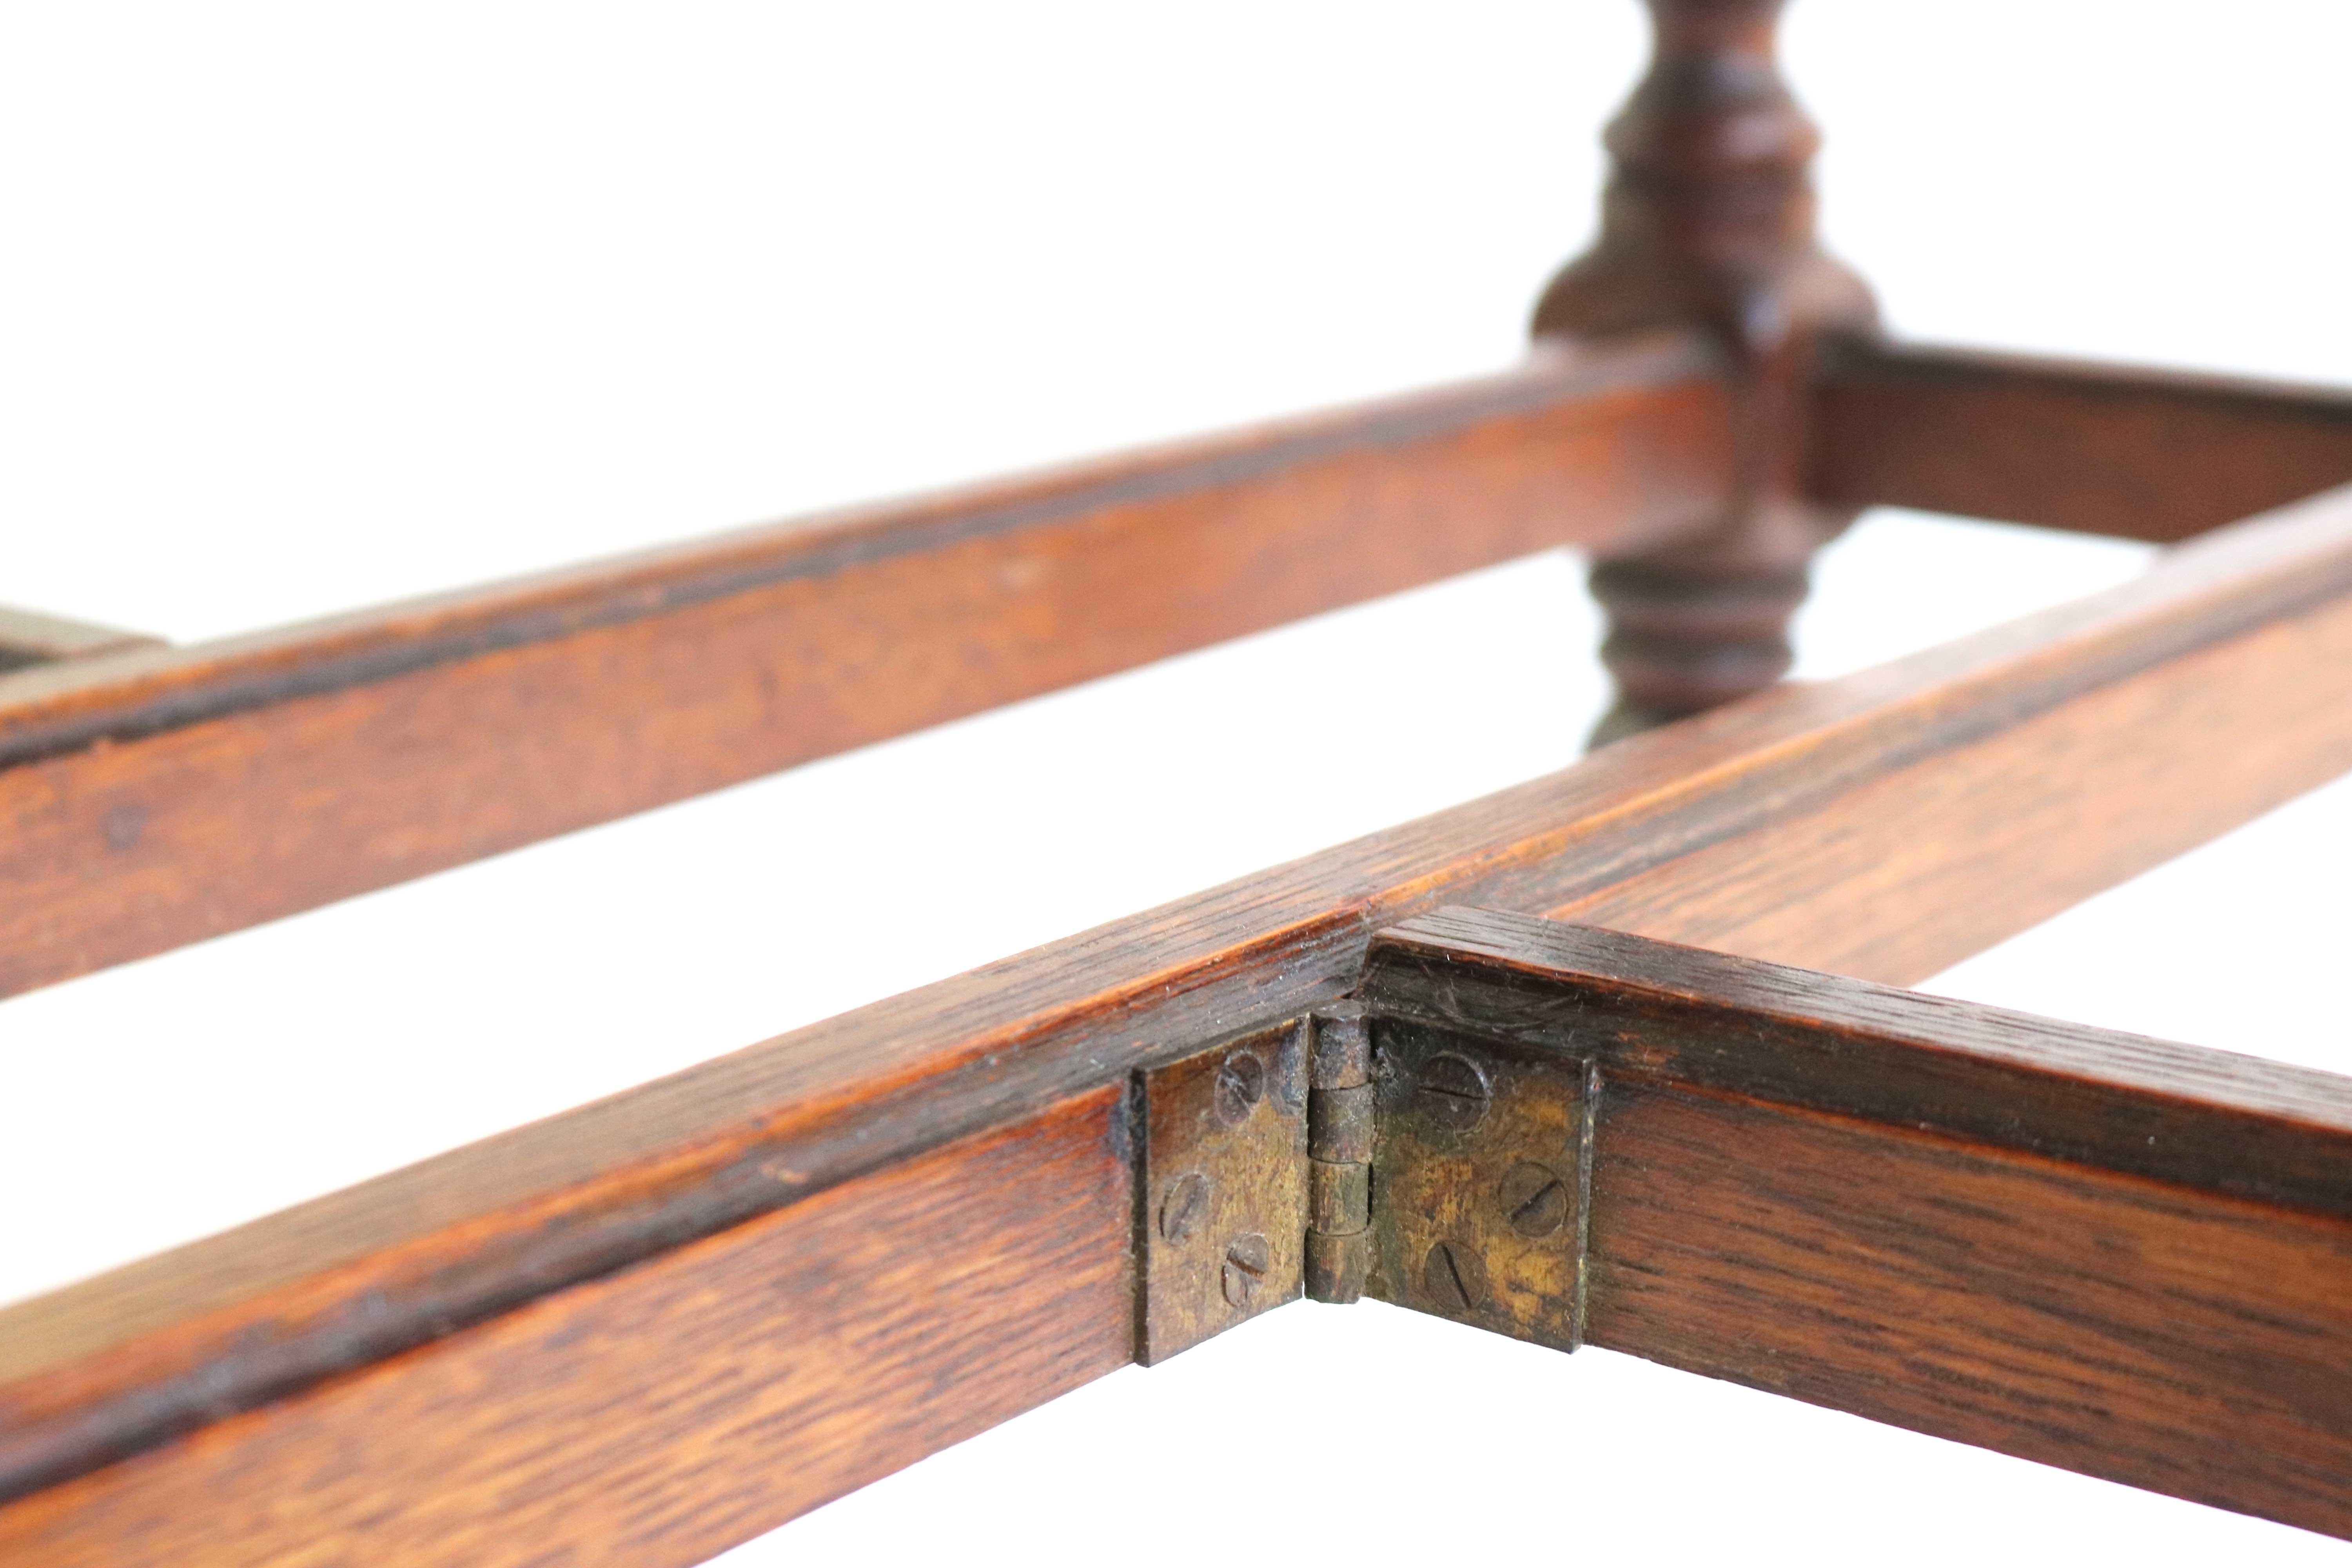 19th Century English Oak Flower Carved Gate-Leg Table Barley Twist Drop Leaf 10